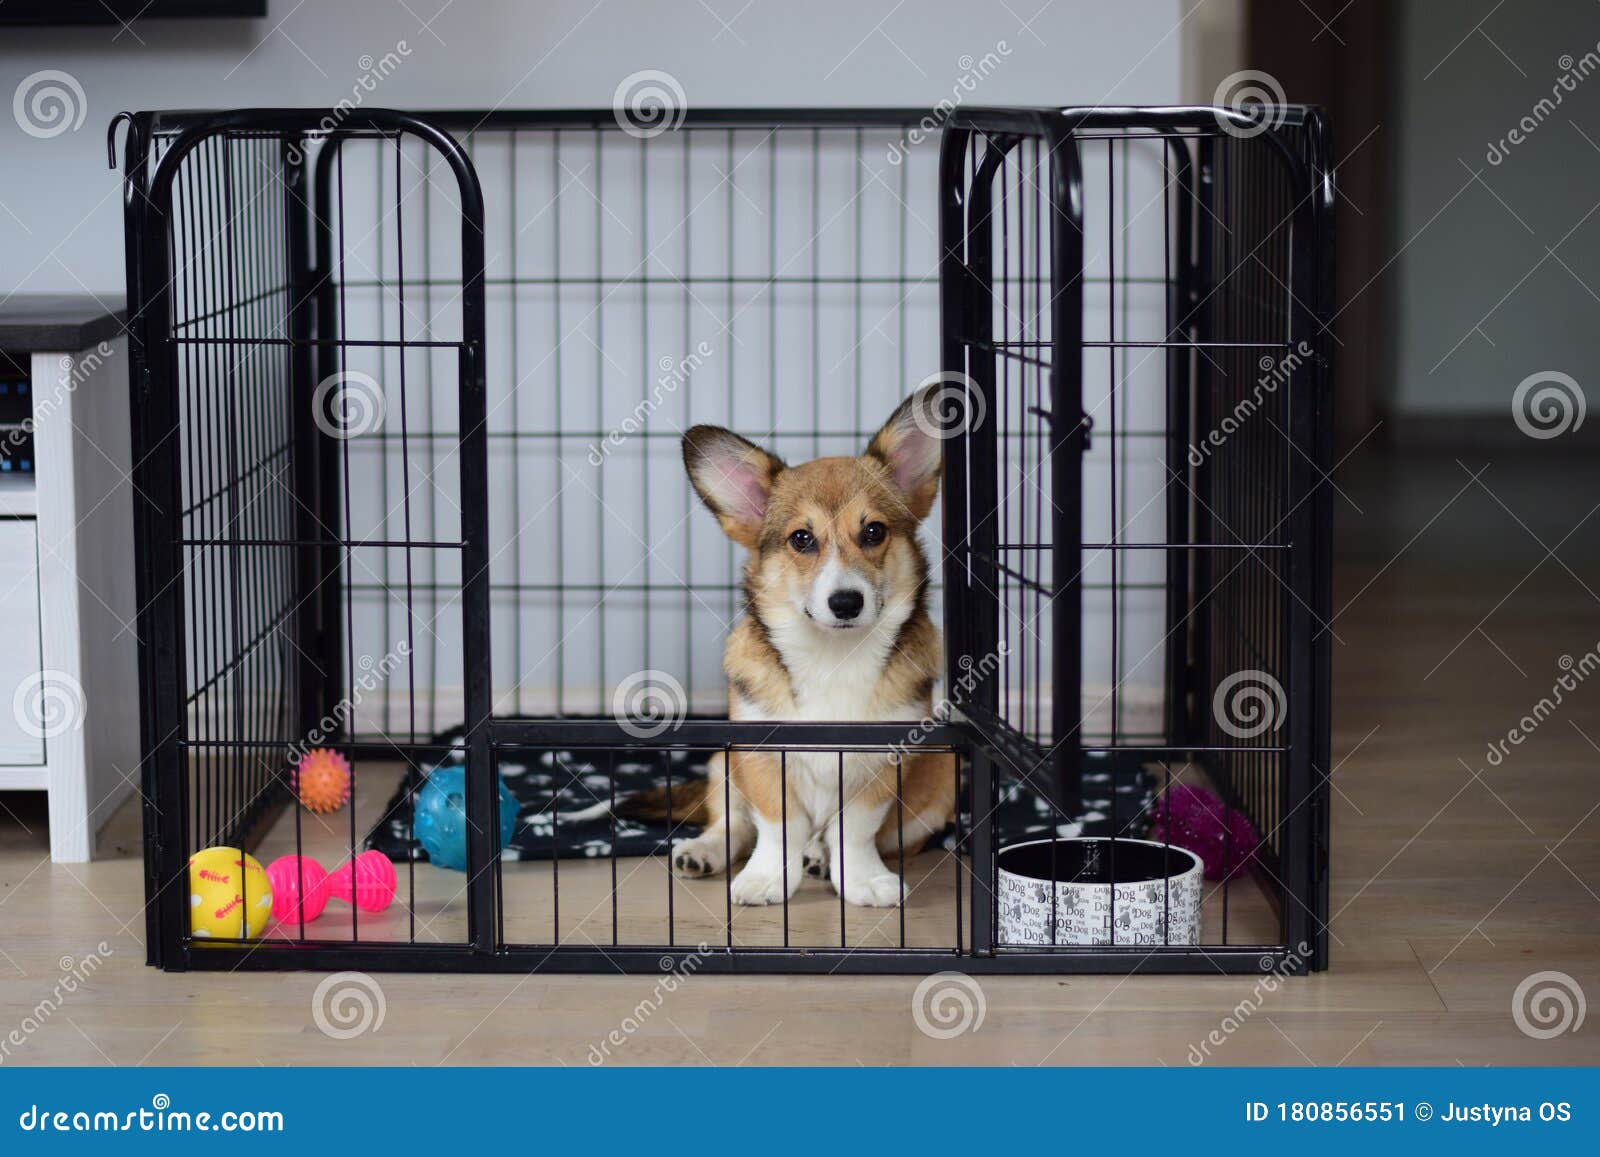 cute welsh corgi pembroke puppy dog in a crate training sitting